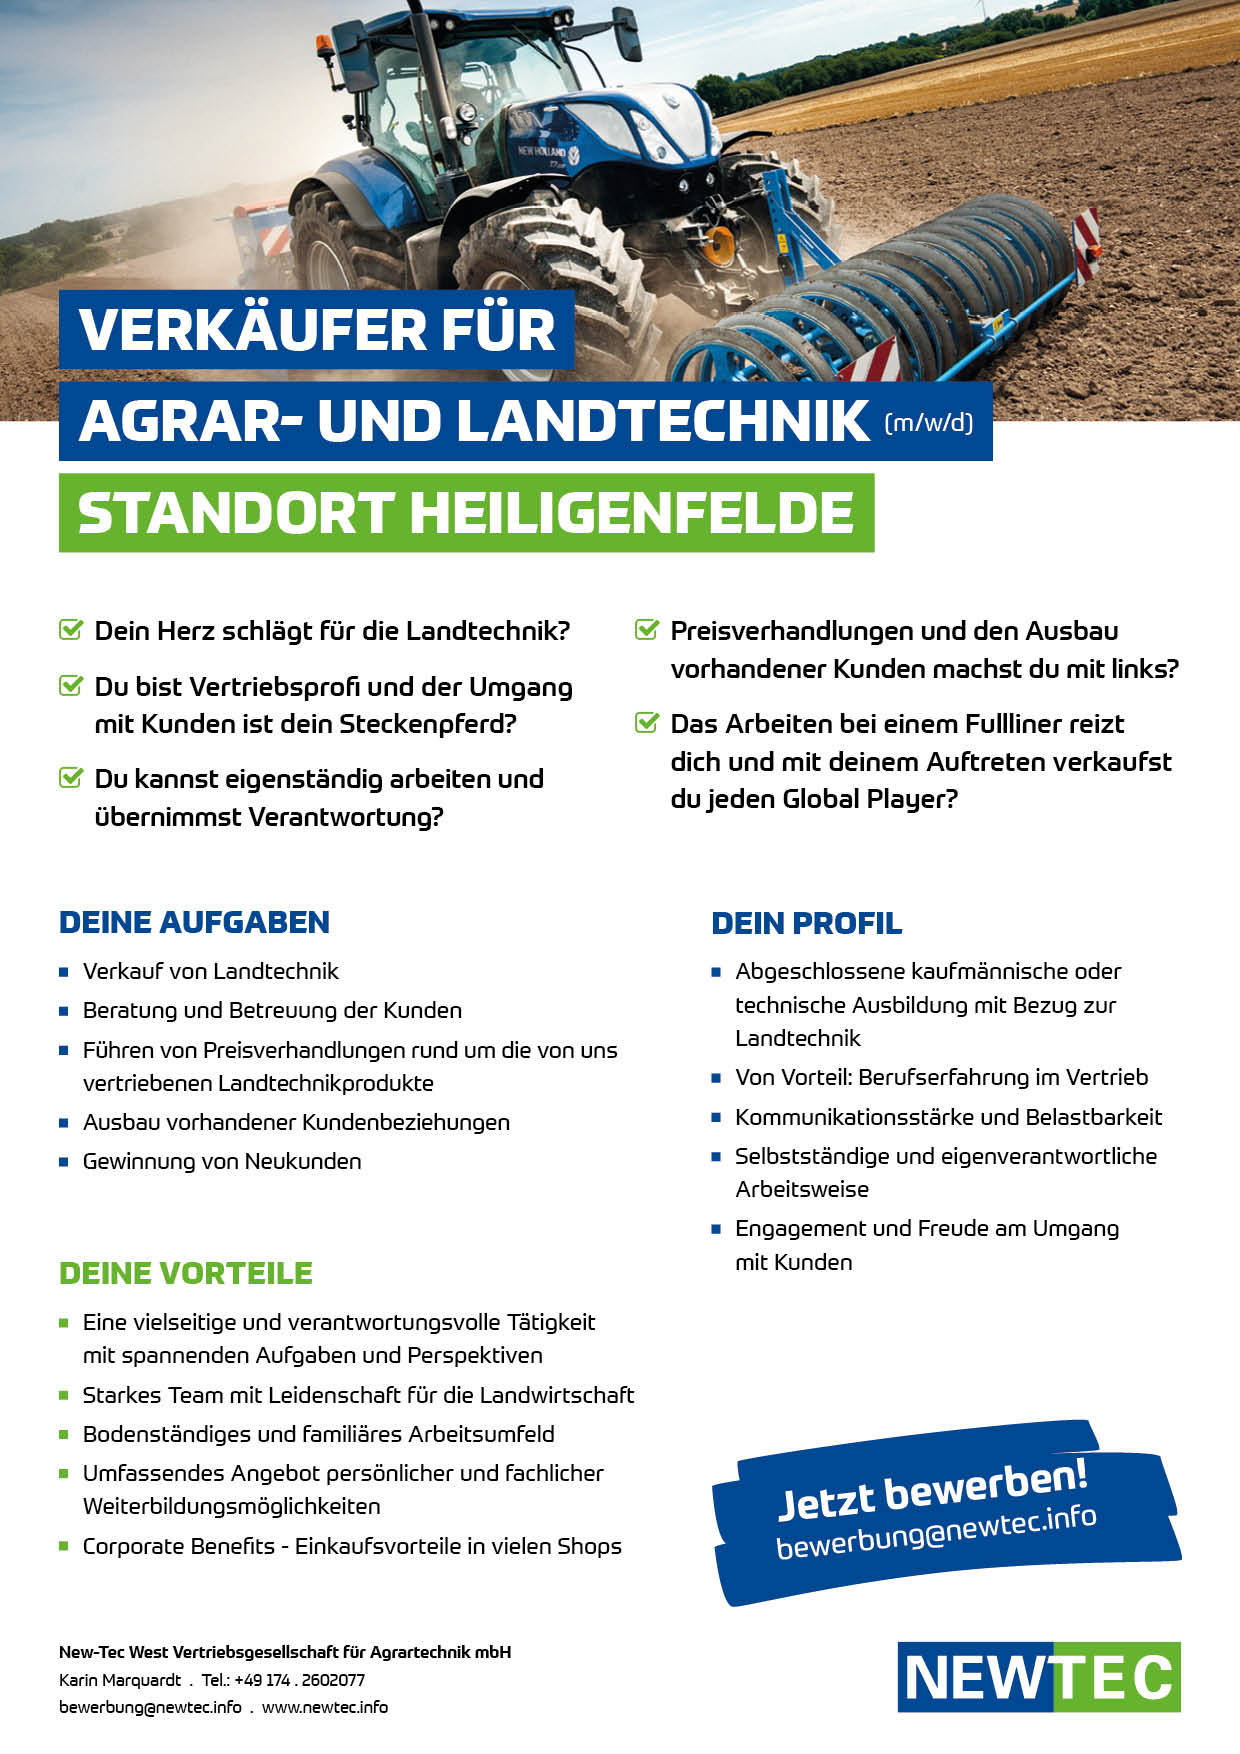 NEWTEC_Stellenanzeige_Verkaeufer_fuer_Agrar-und_Landtechnik_Heiligenfelde